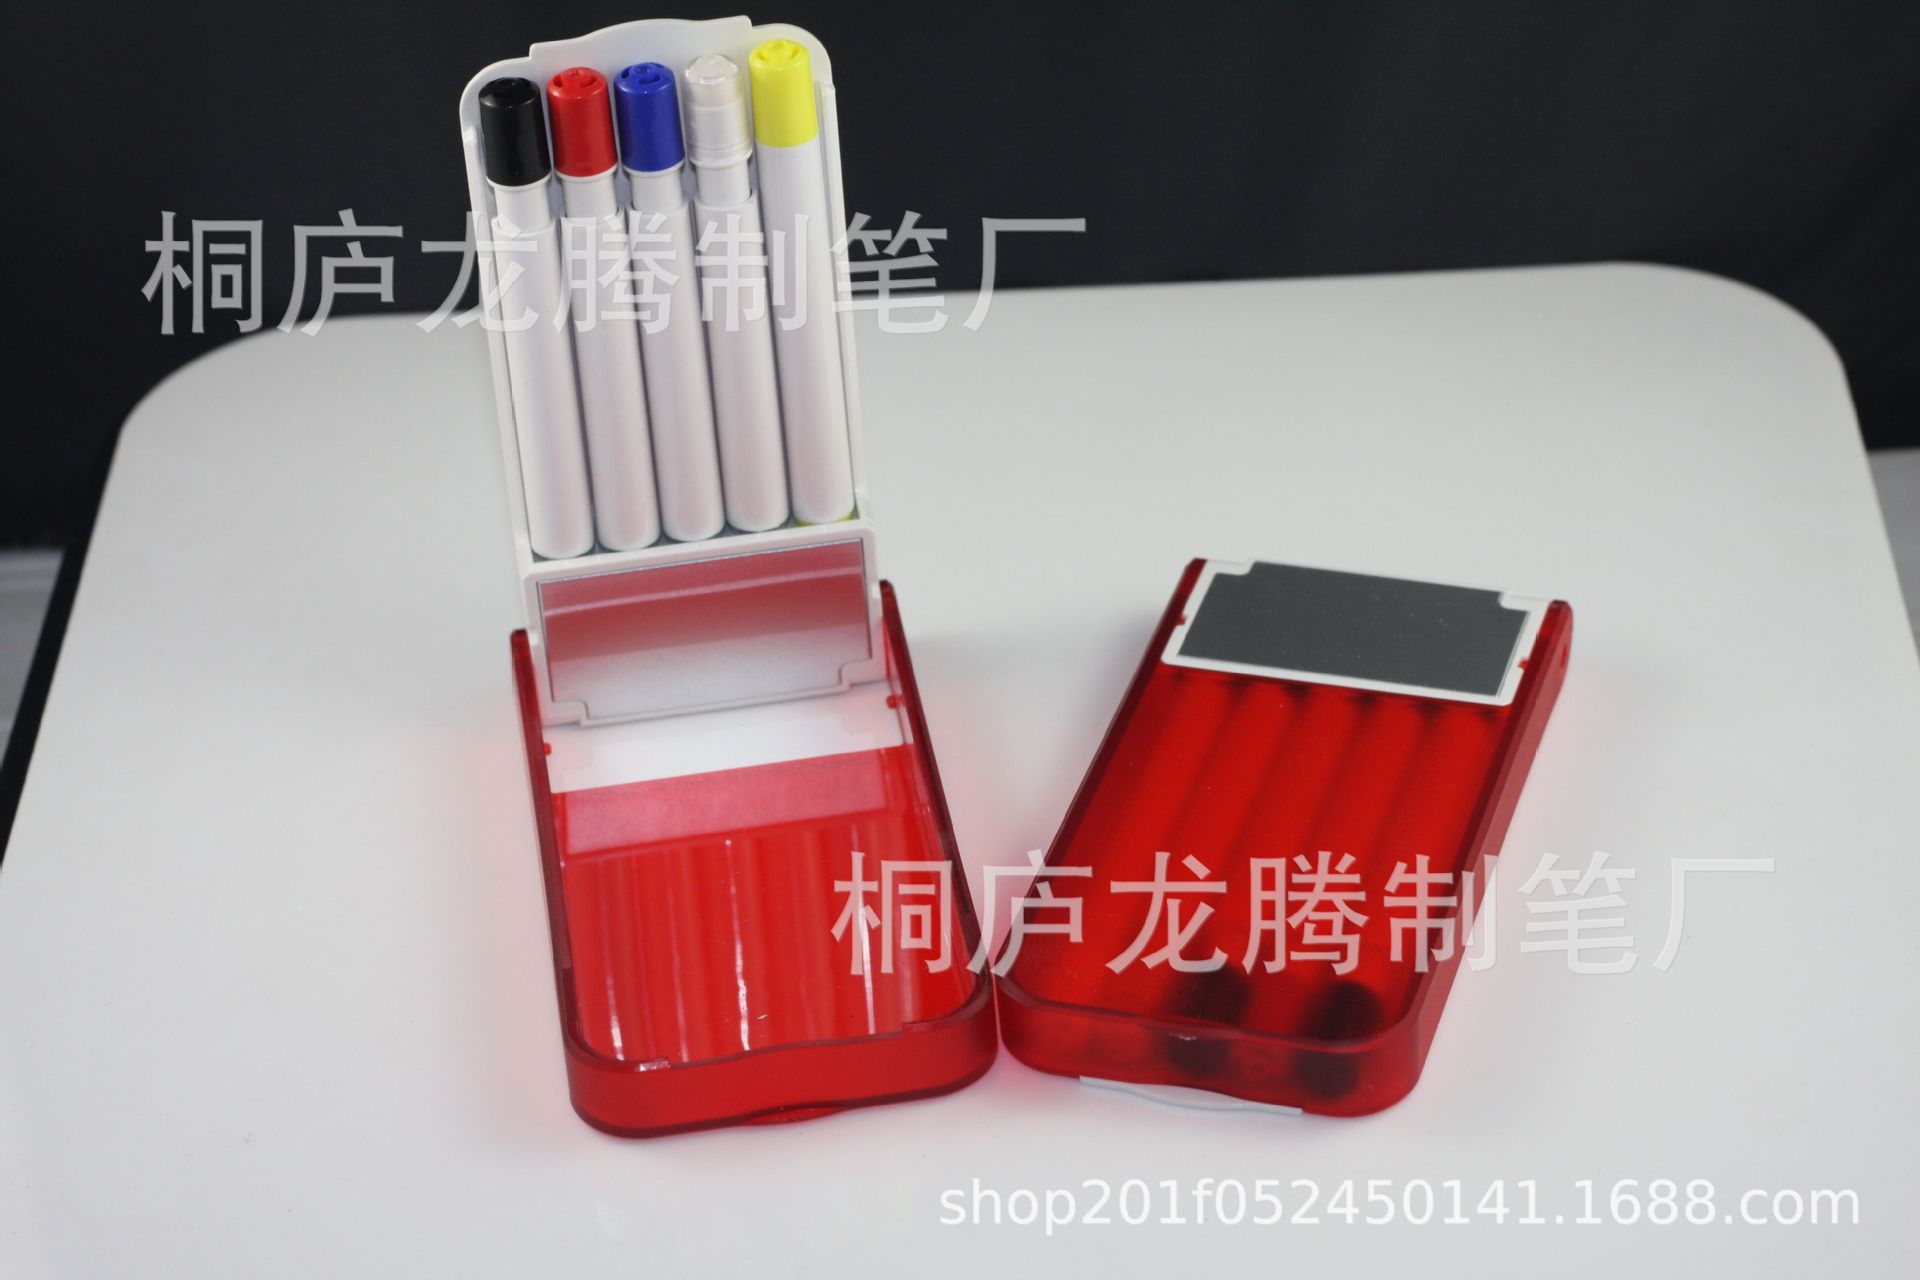 多功能套装笔 圆珠笔荧光笔 自动铅笔 广告礼品赠品笔可定制LOGO